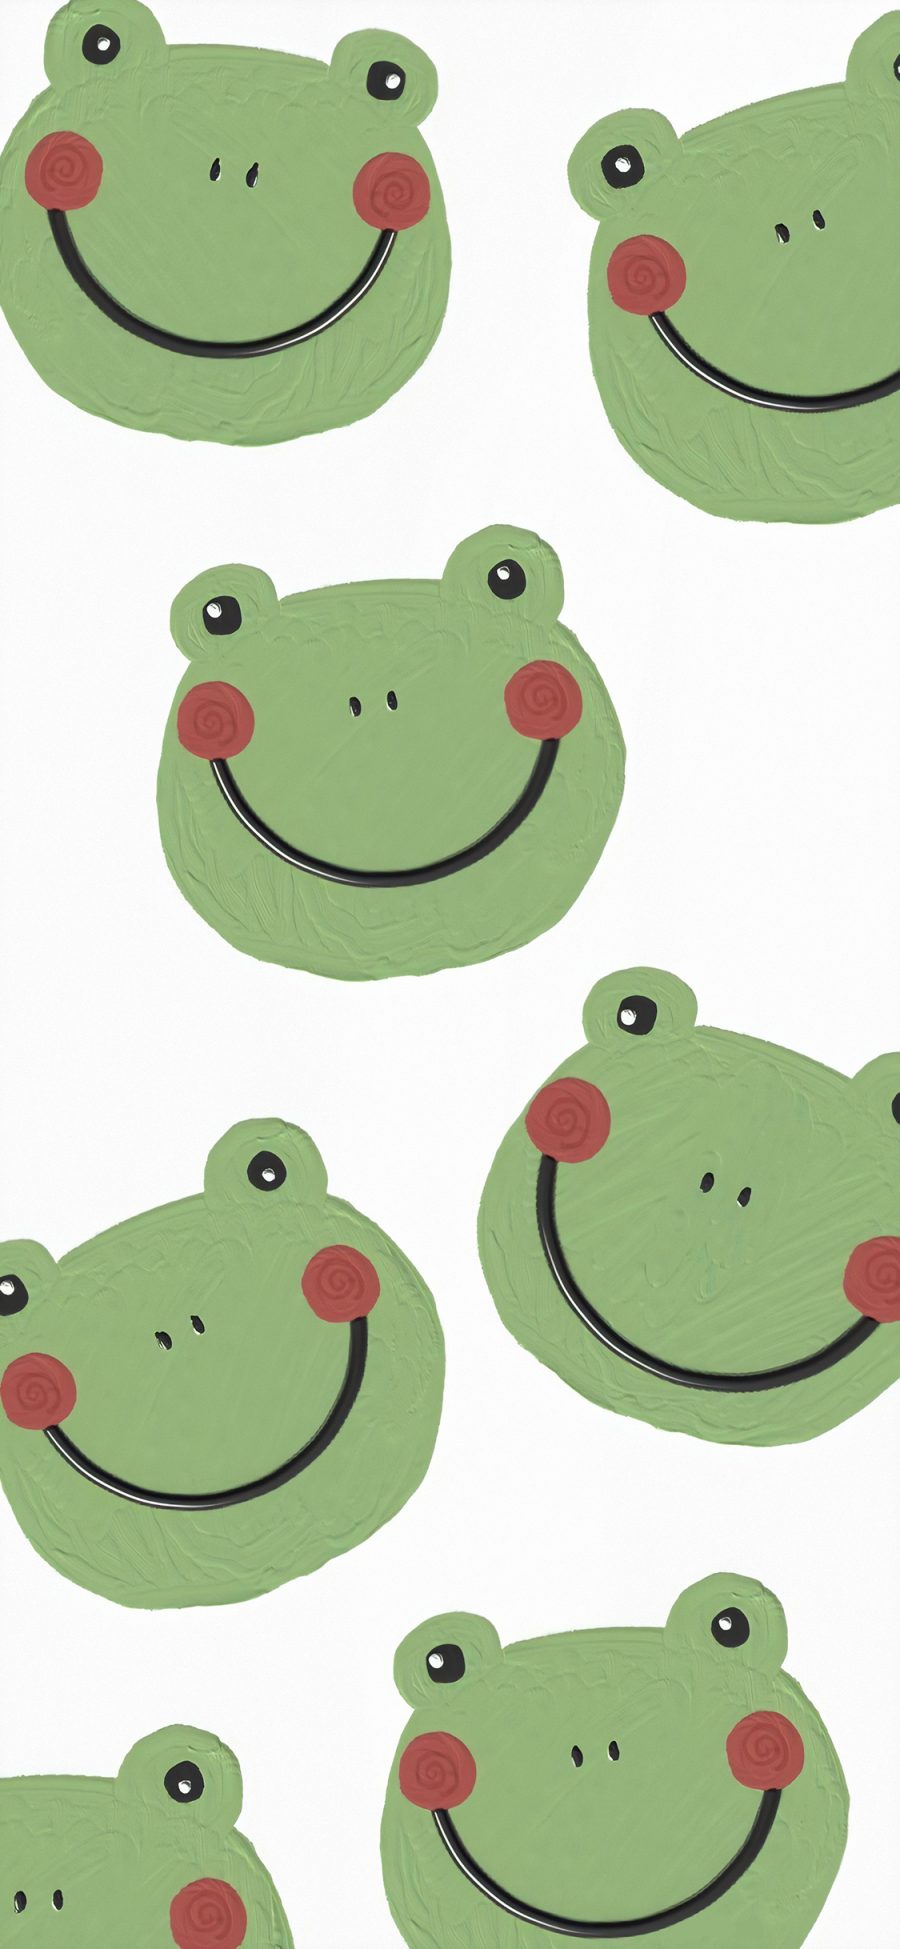 [2436×1125]青蛙 平铺 笑脸 绿 苹果手机动漫壁纸图片